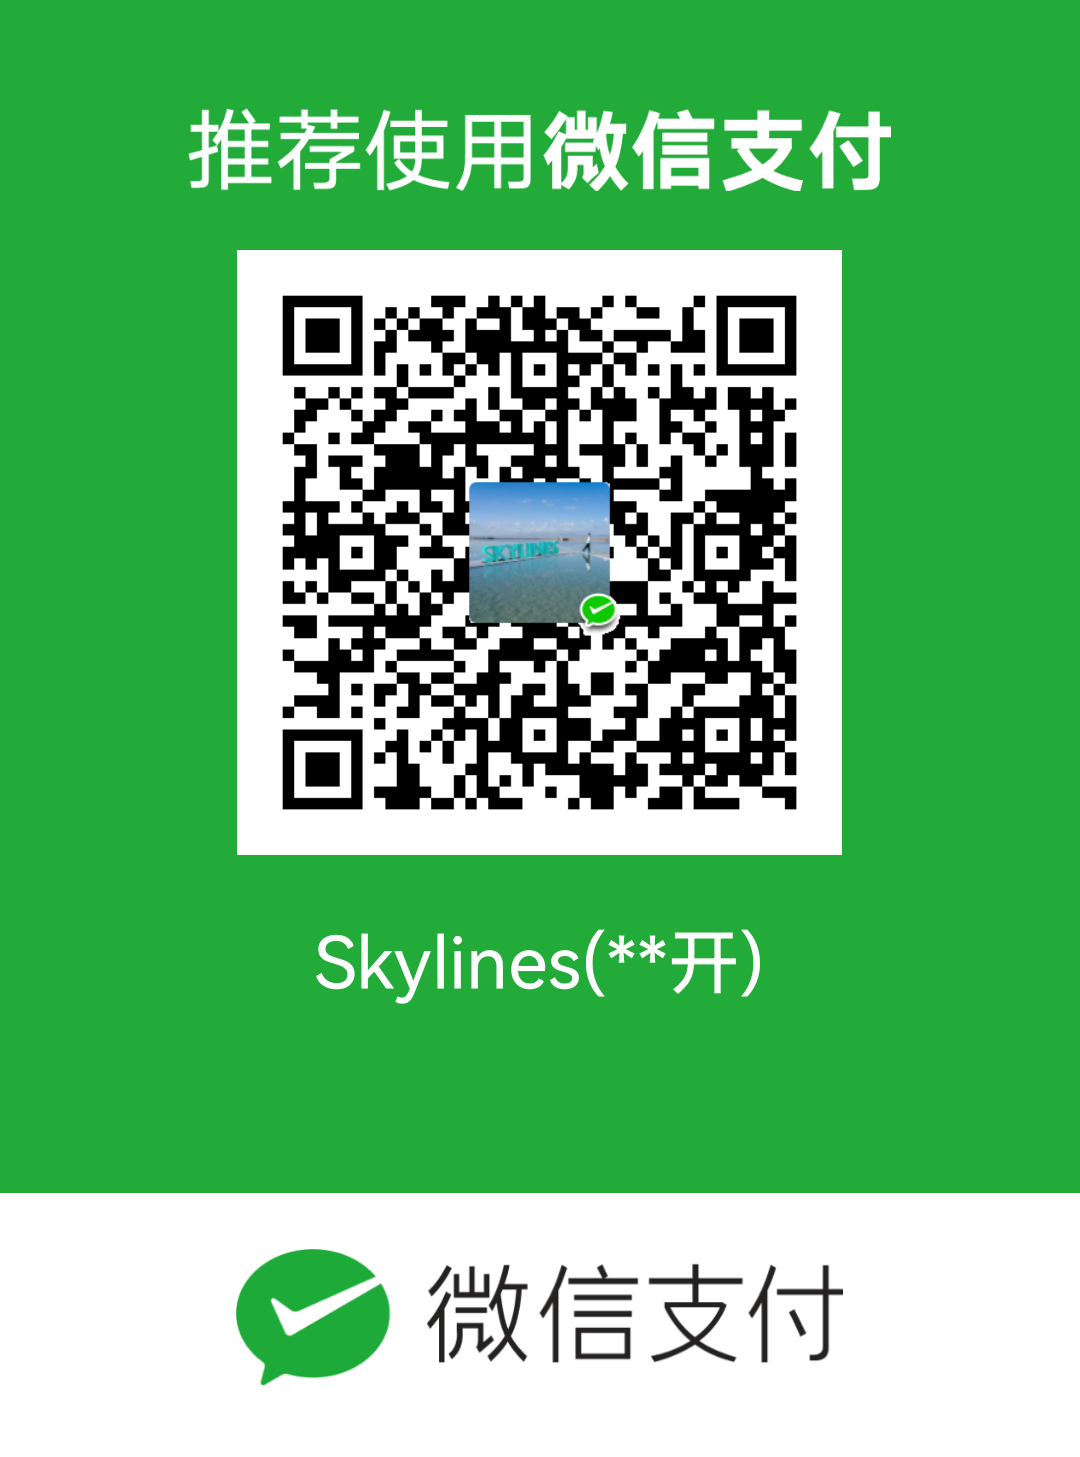 Jiankai Xing WeChat Pay